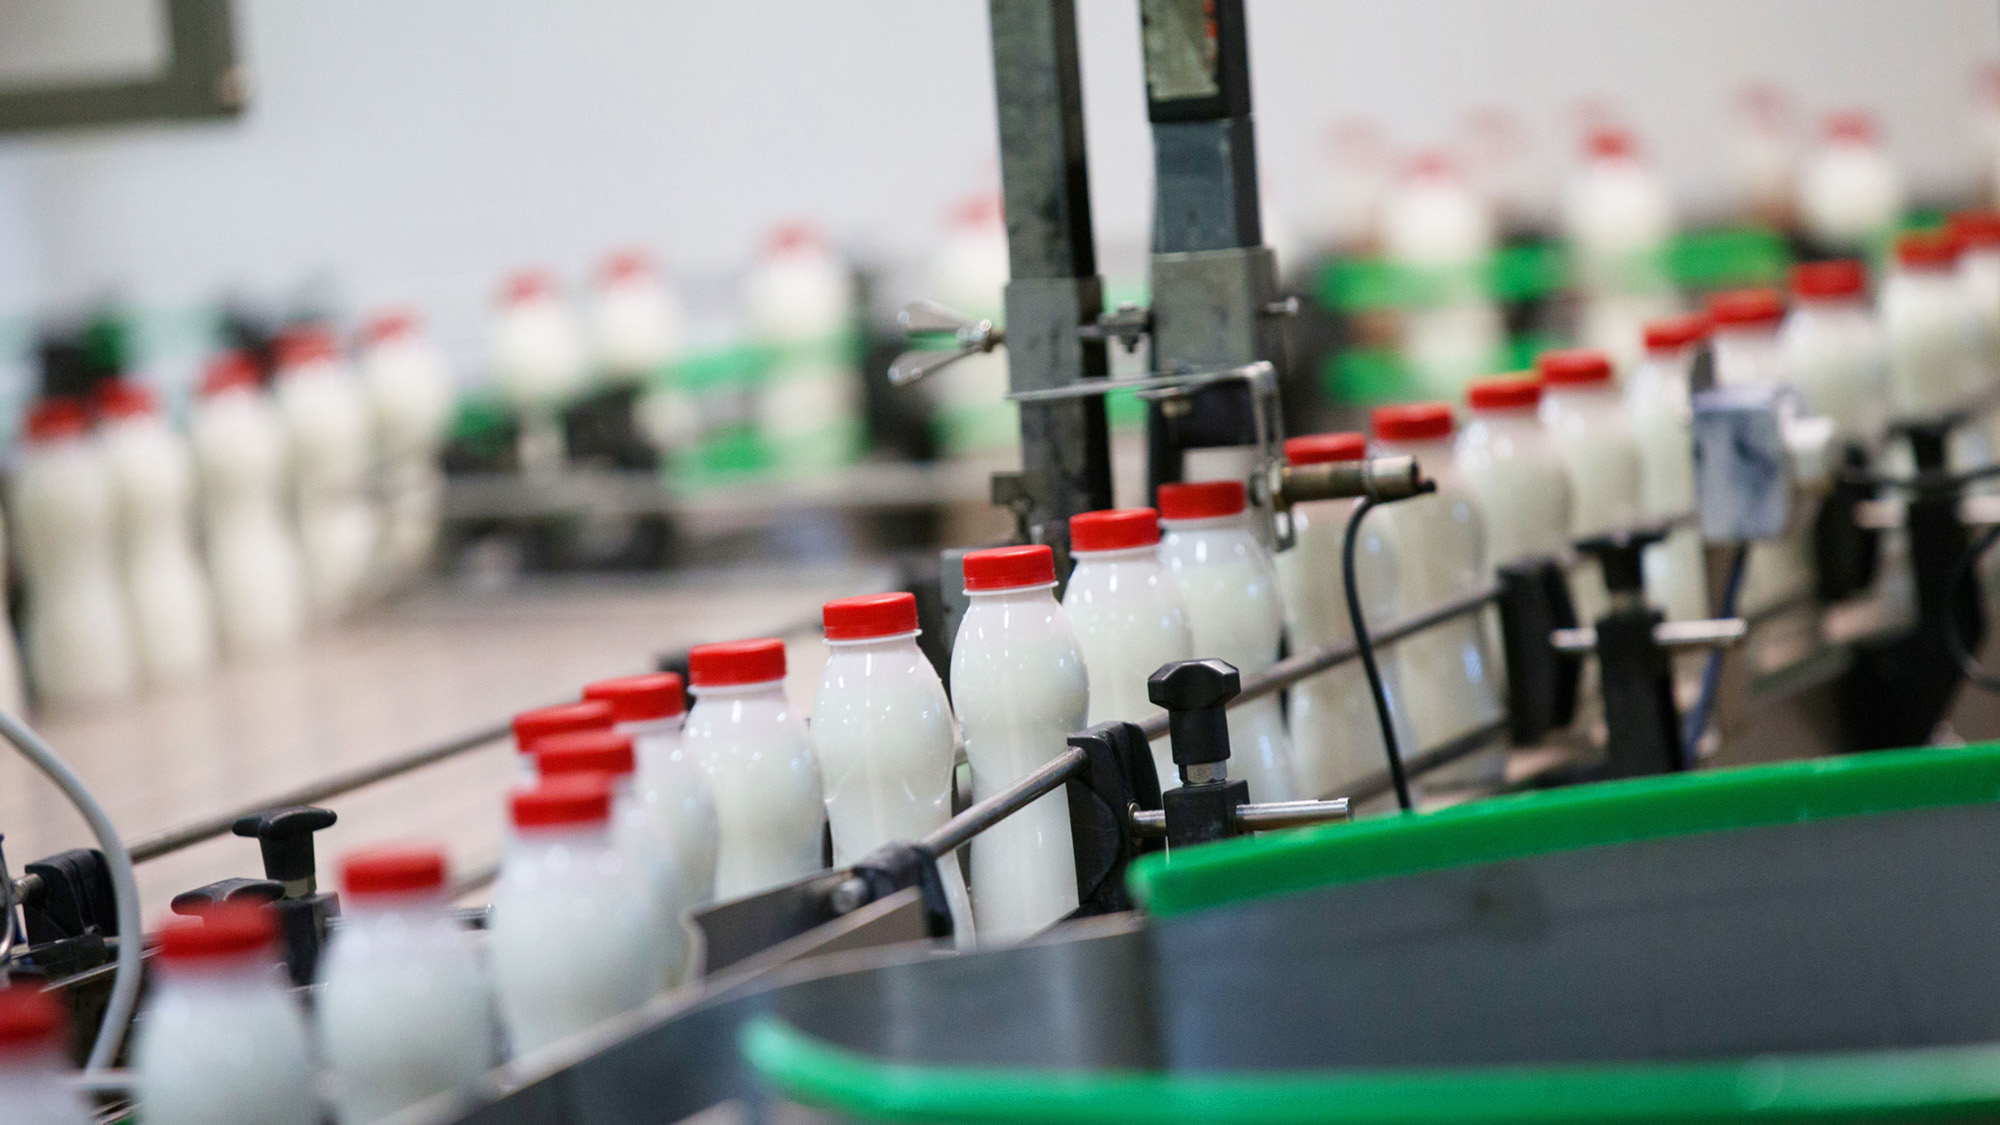 Milk bottles on a conveyor belt in a milk factory